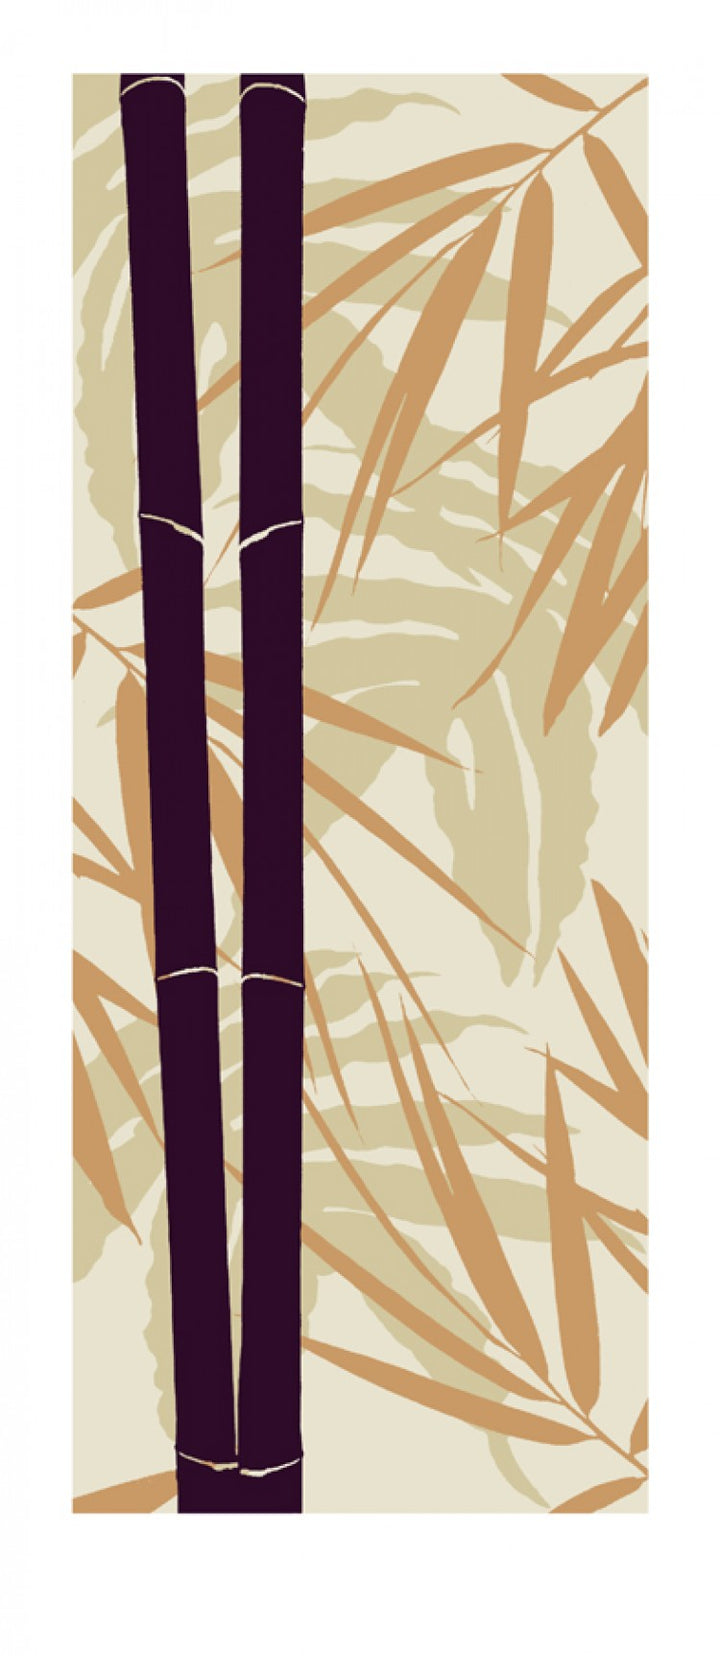 Bambous, 2006 by  Davide Polla - 20 X 45 Inches (Silkscreen / Sérigraphie)